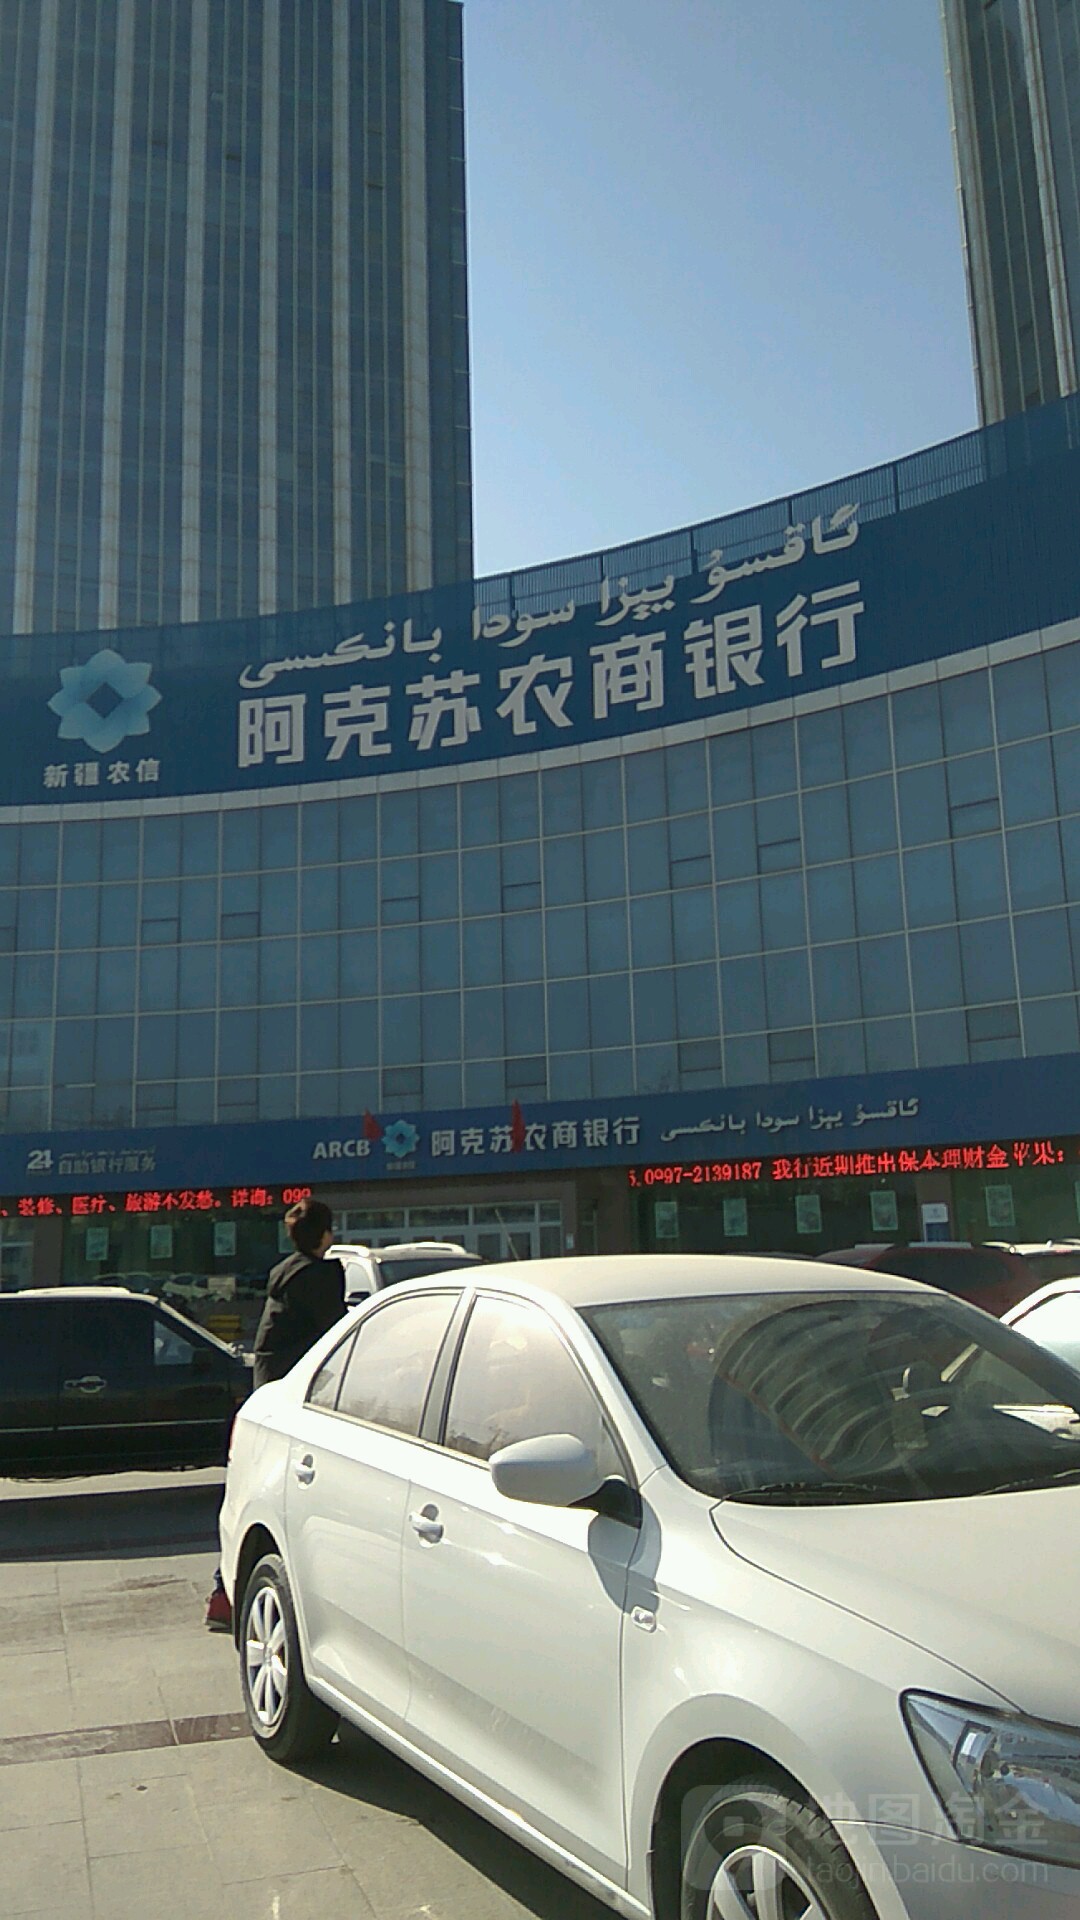 阿克苏侬商银行(健康路信用社)